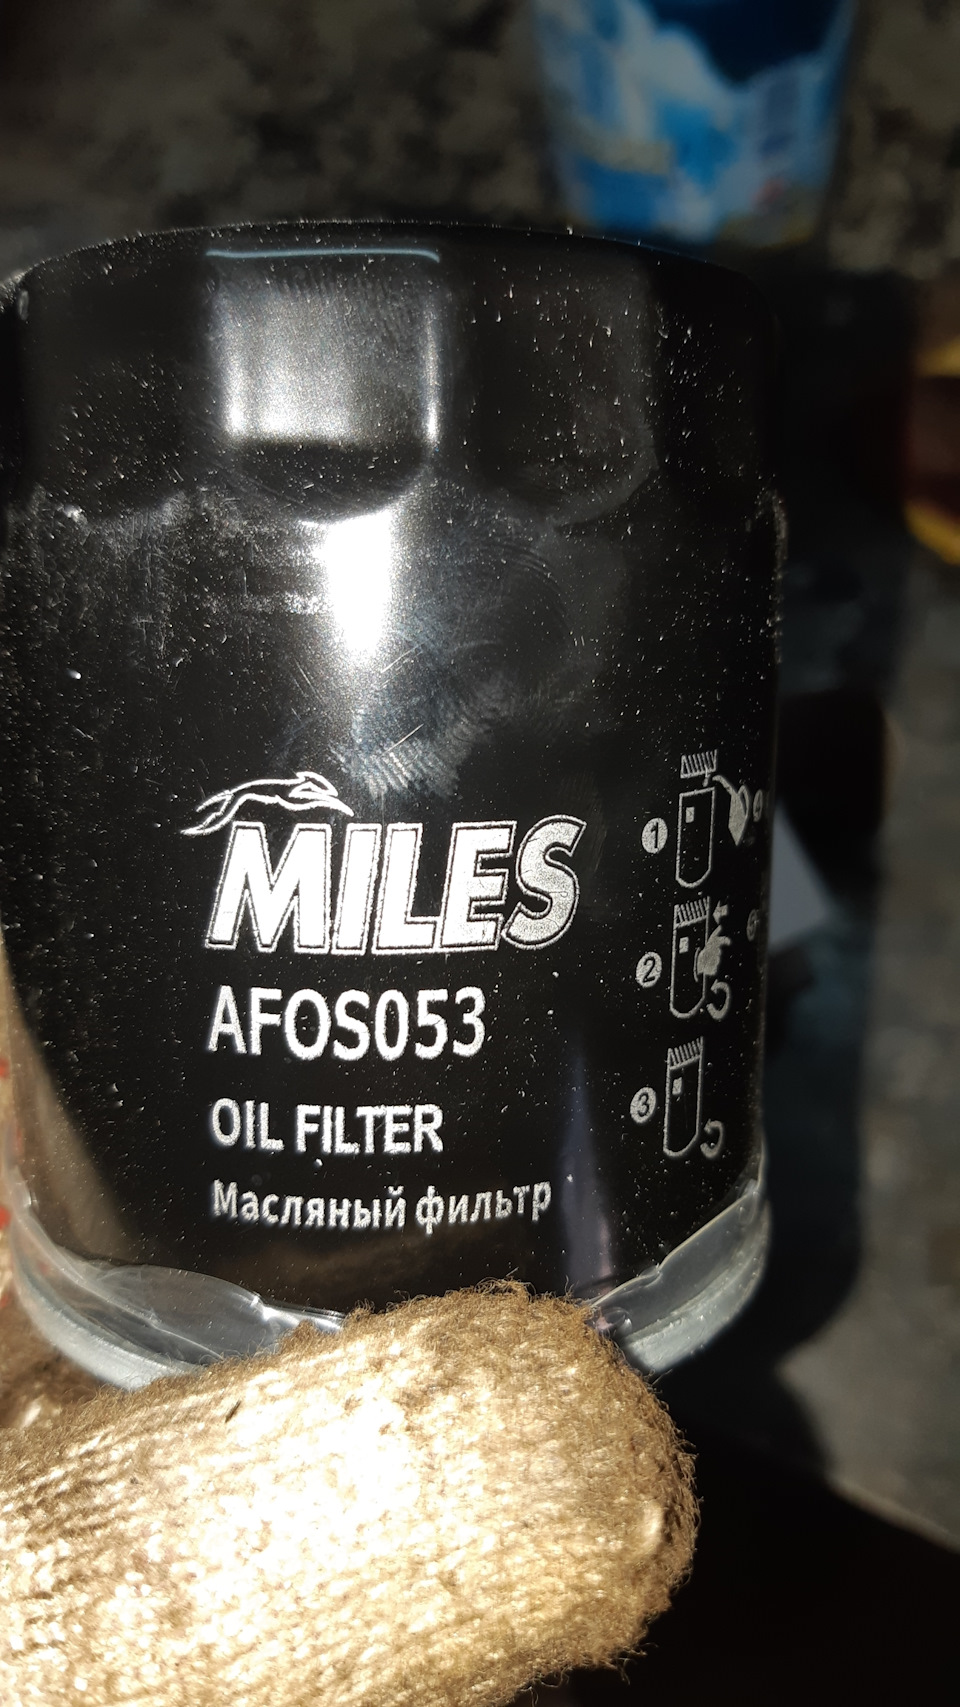 Фильтр масляный Miles AFOS-077. 2649278 Фильтр масляный. Lancer 10 1.8 фильтр масляный. Масляный фильтр Лансер 10 1.5. Фильтр масляный miles